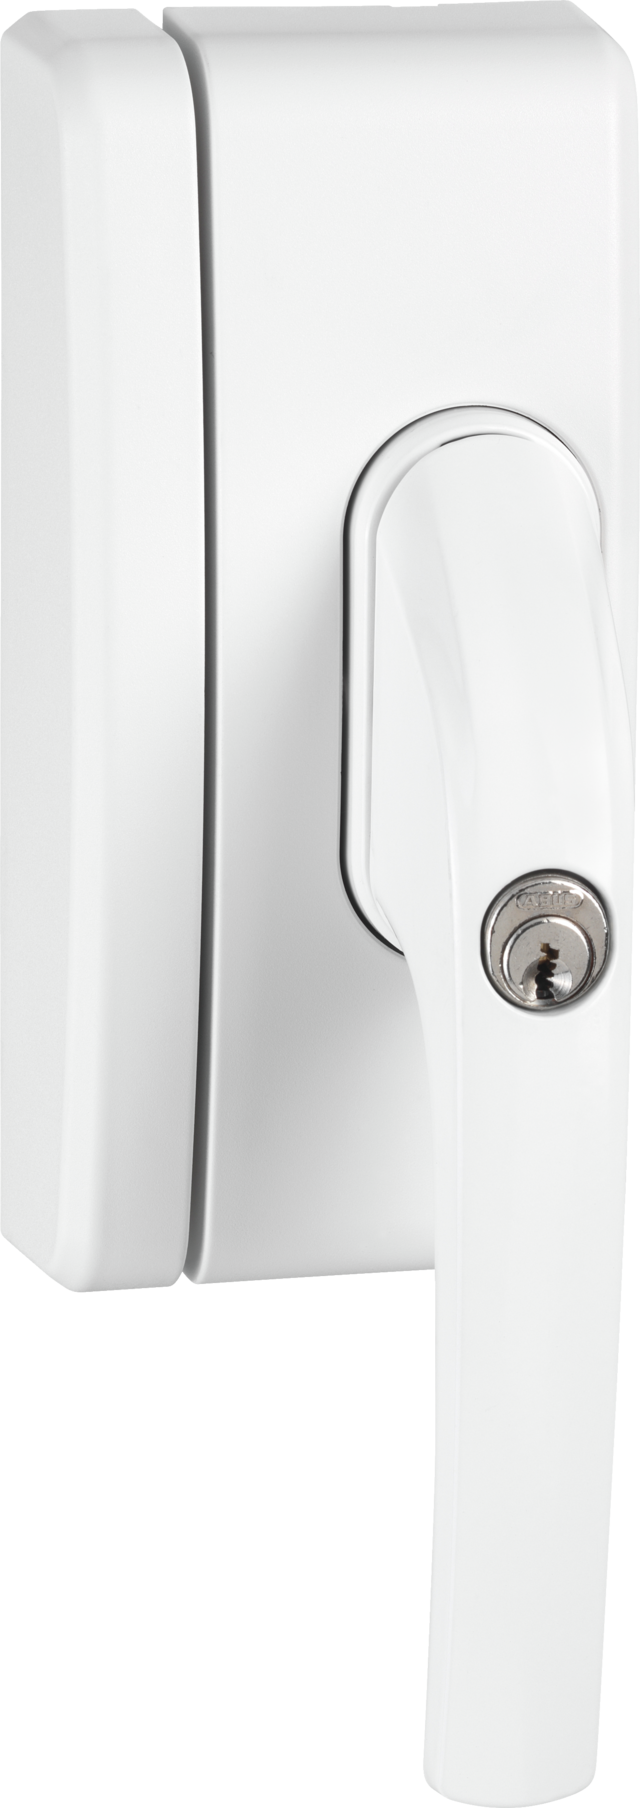 Secvest trådløs vinduesgrebsikring FO 400 E –  AL0089 (hvid) front vis fra front højre